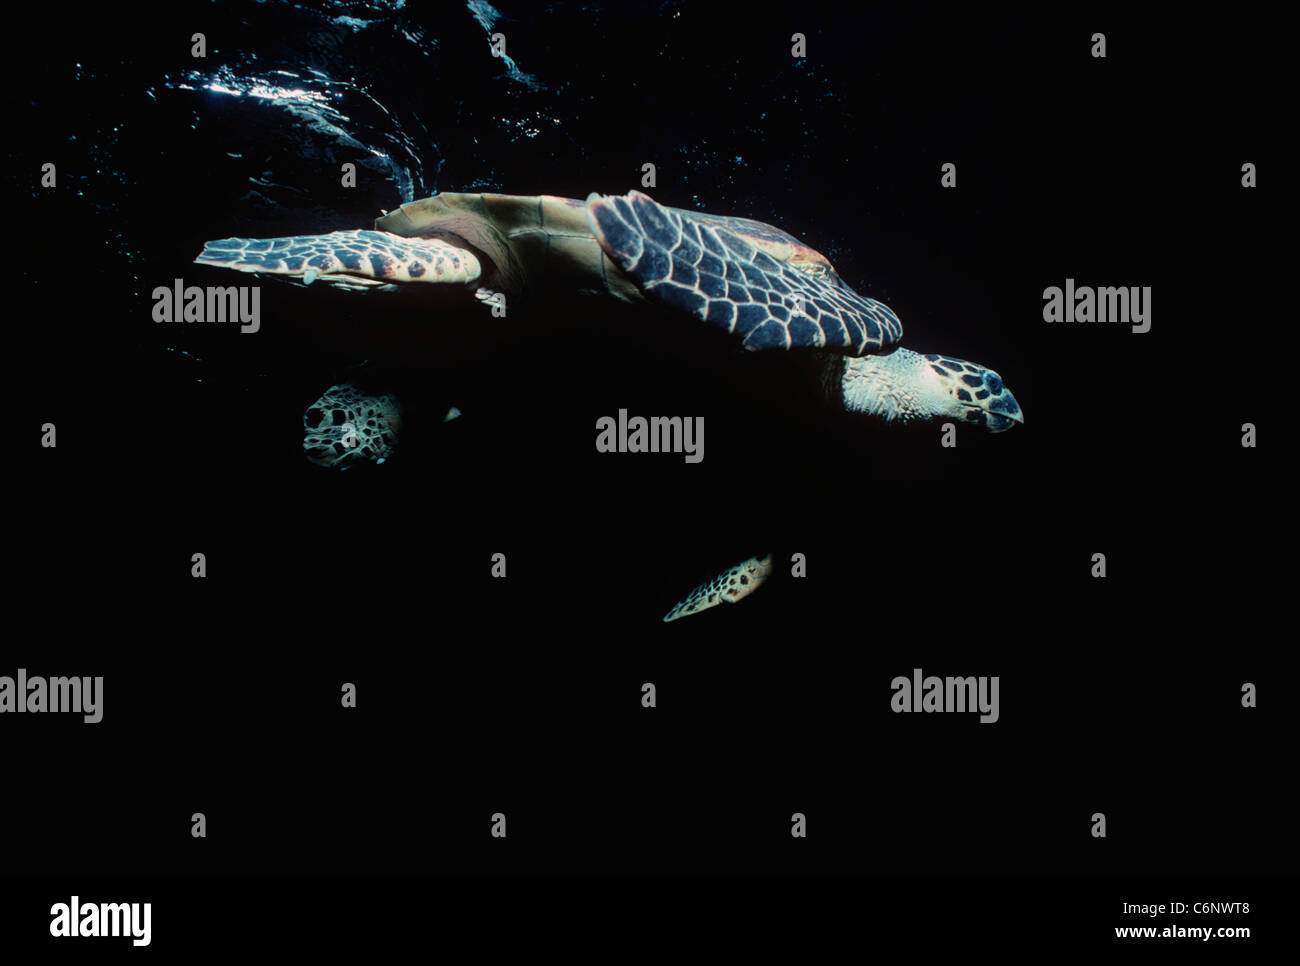 Tartaruga embricata (Eretmochelys imbricata) nuotare vicino alla superficie dell'oceano. Egitto, Mar Rosso Foto Stock